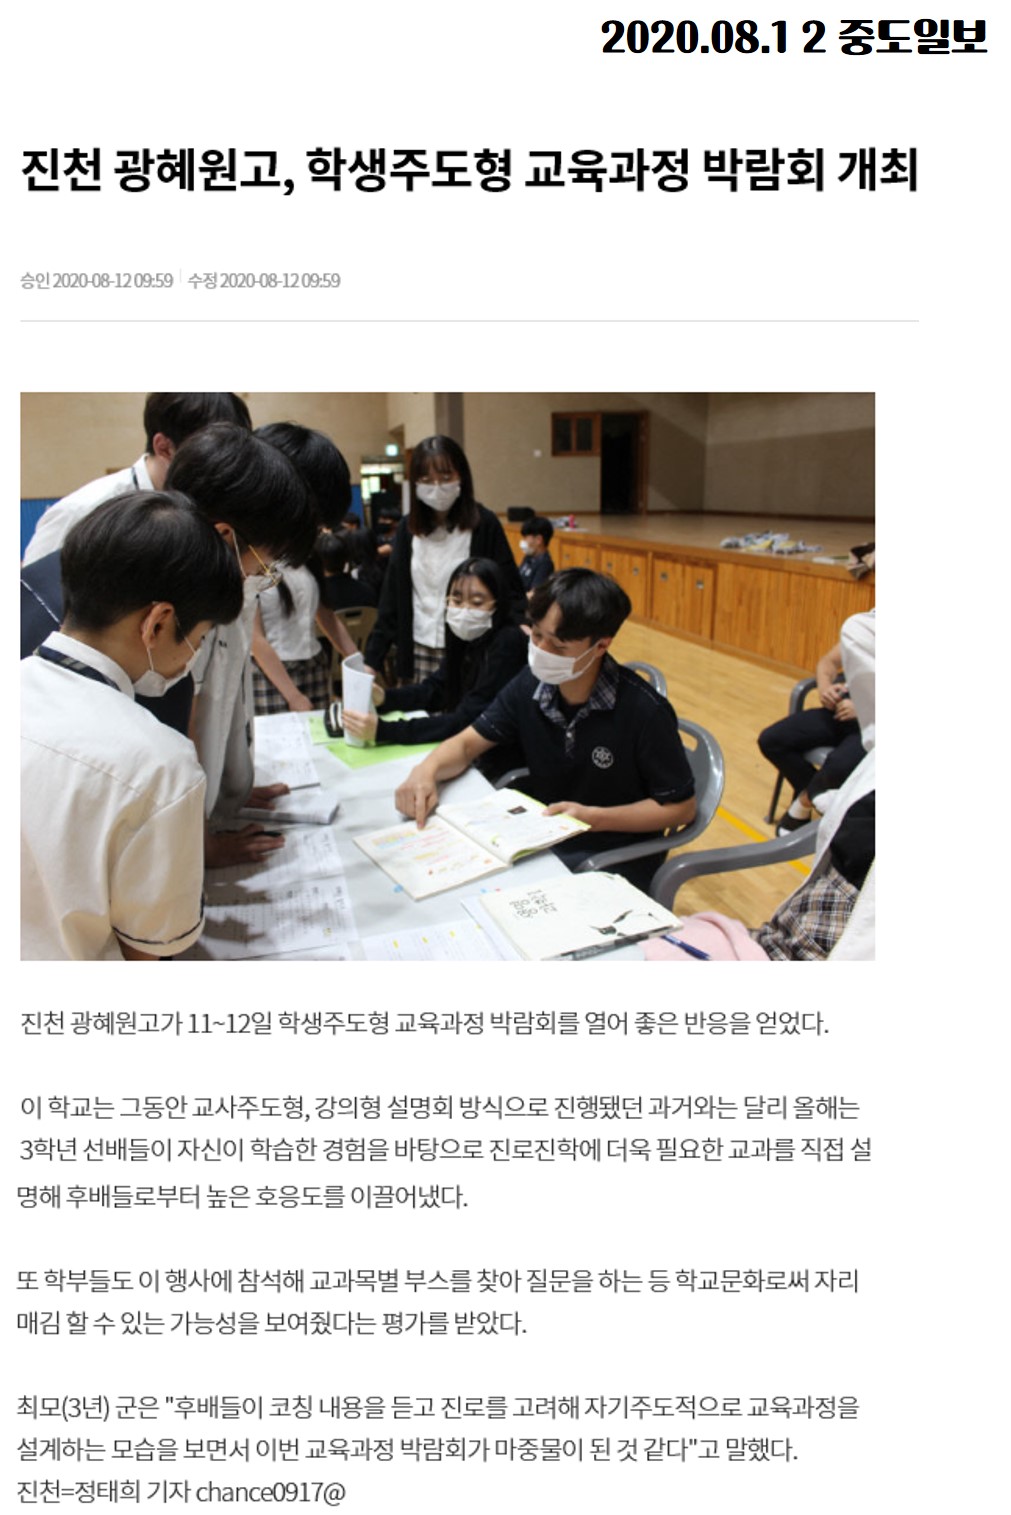 2020.08.12 진천 광혜원고, 학생주도형 교육과정 박람회 개최(중도일보)